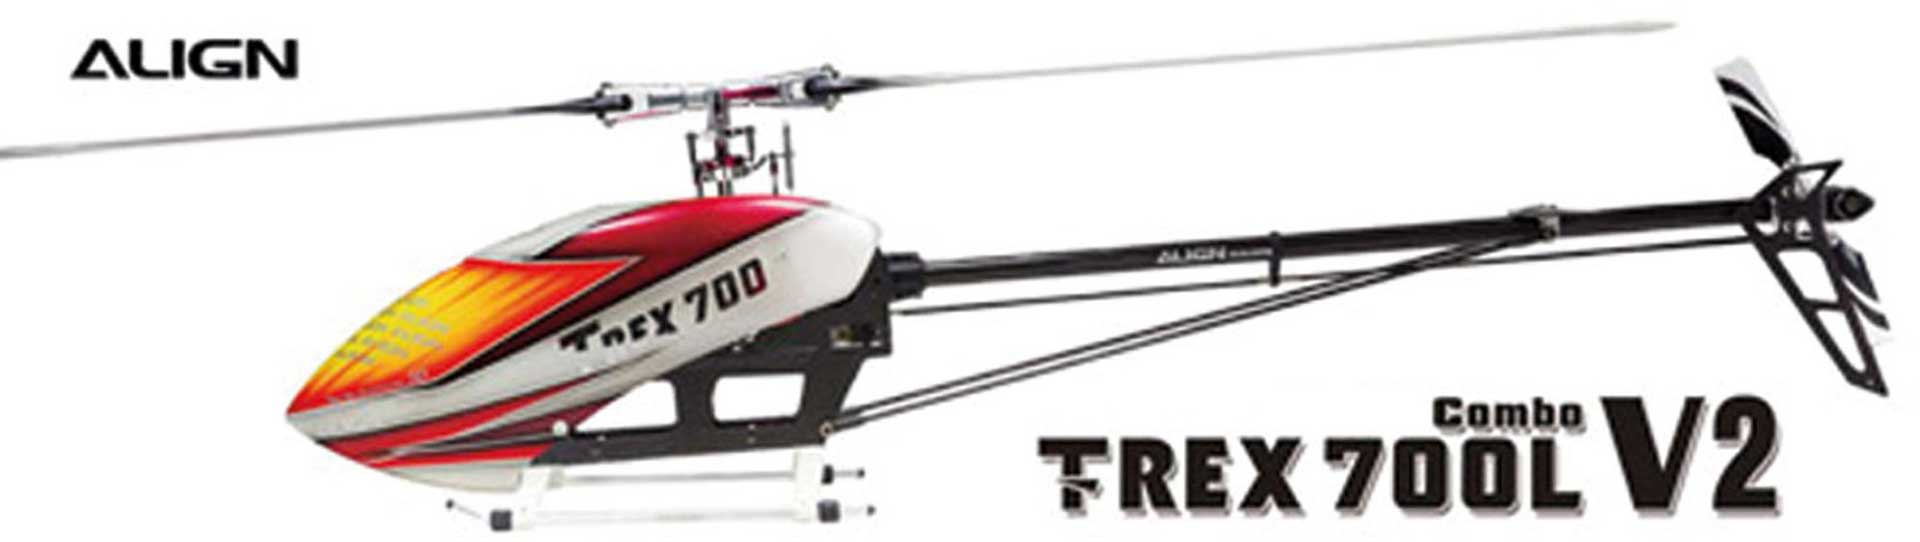 ALIGN T-REX 700L V2 COMBO Hubschrauber / Helikopter